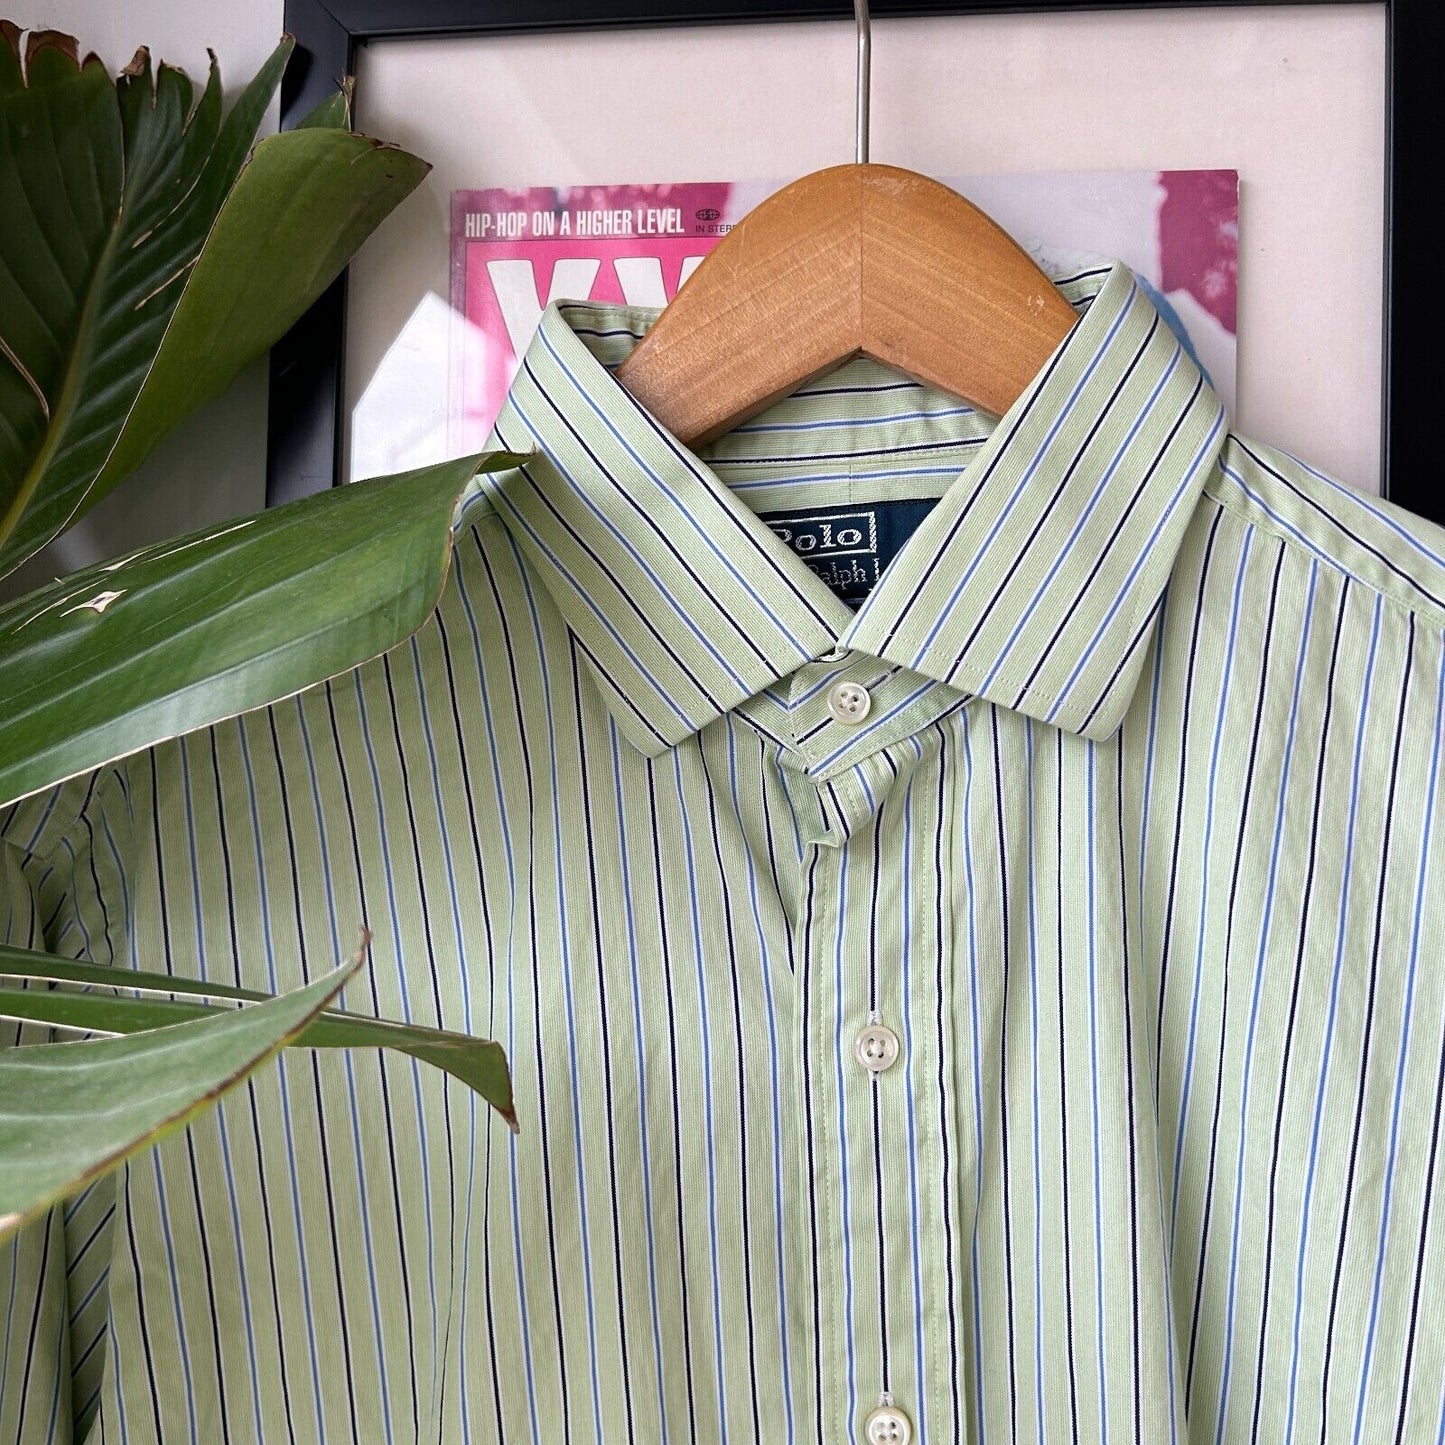 VINTAGE | POLO Ralph Lauren Striped Classic Fit Button Down Shirt sz L Adult